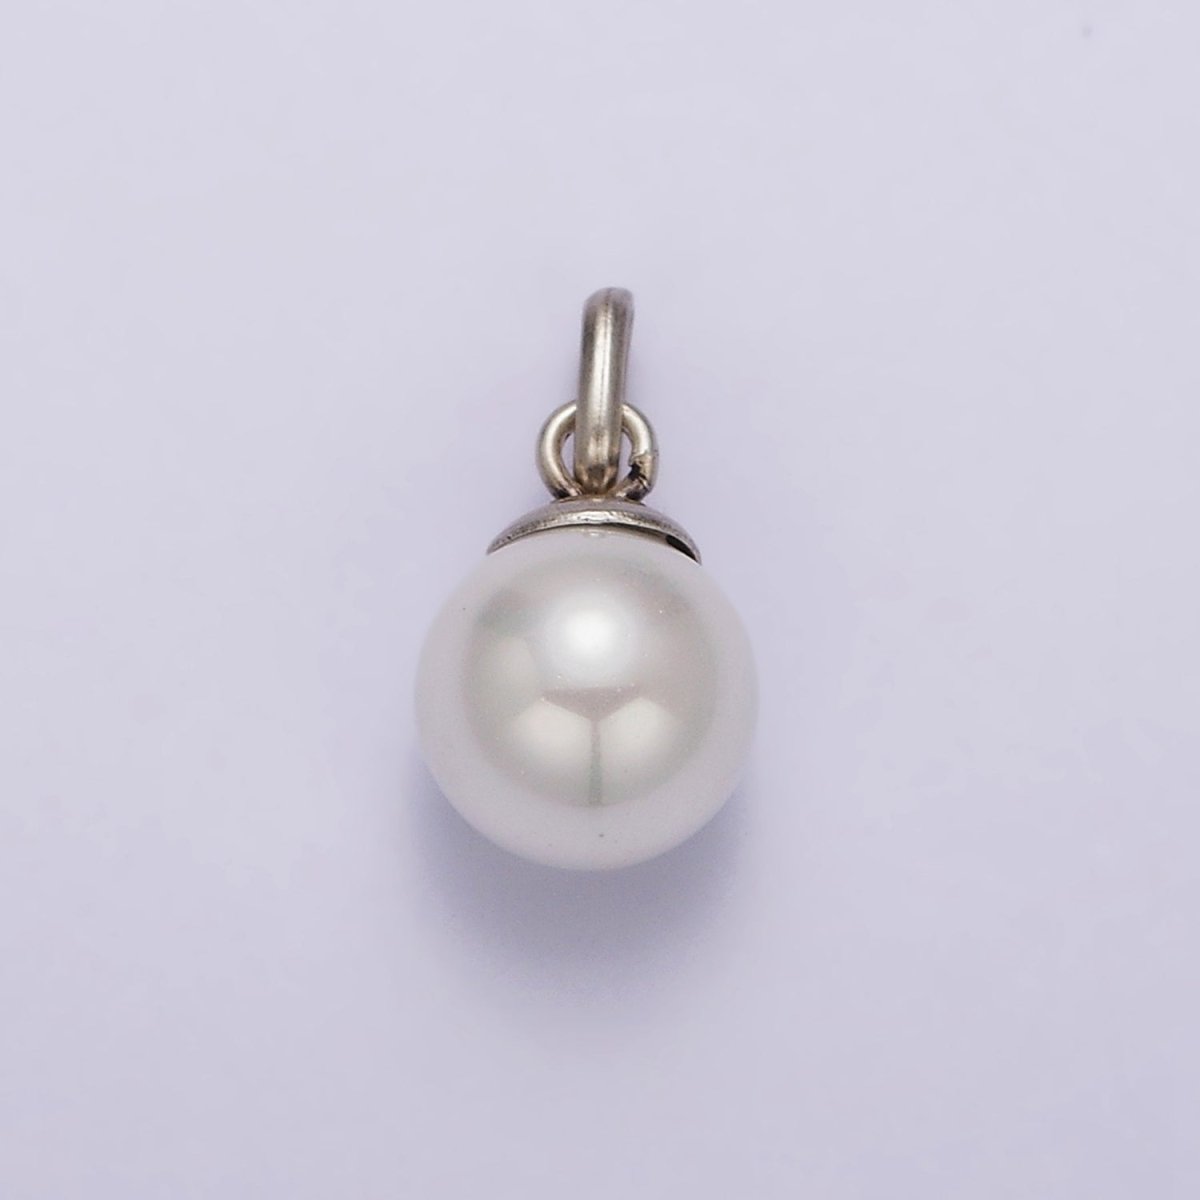 Mini Pearl Charm Dangle Drop Pendant in 925 Sterling Silver Pendant SL-337 - DLUXCA